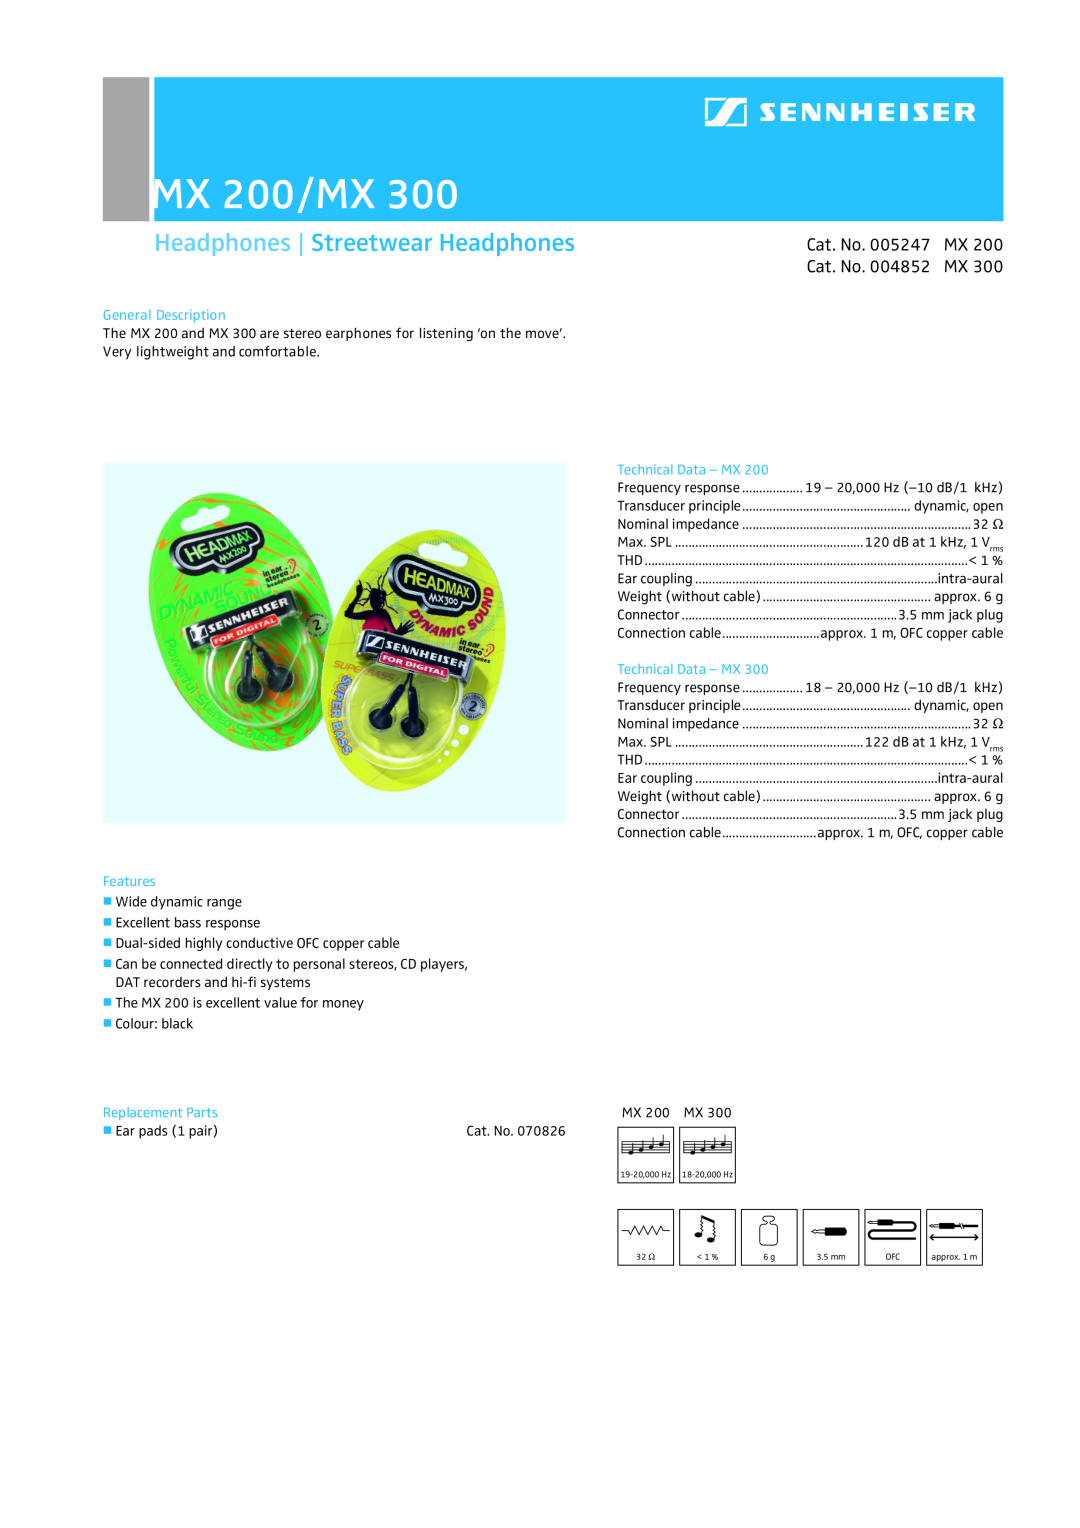 Sennheiser manual MX 200/MX, Headphones Streetwear Headphones, Cat. No. 005247 MX 200 Cat. No. 004852 MX, Features 